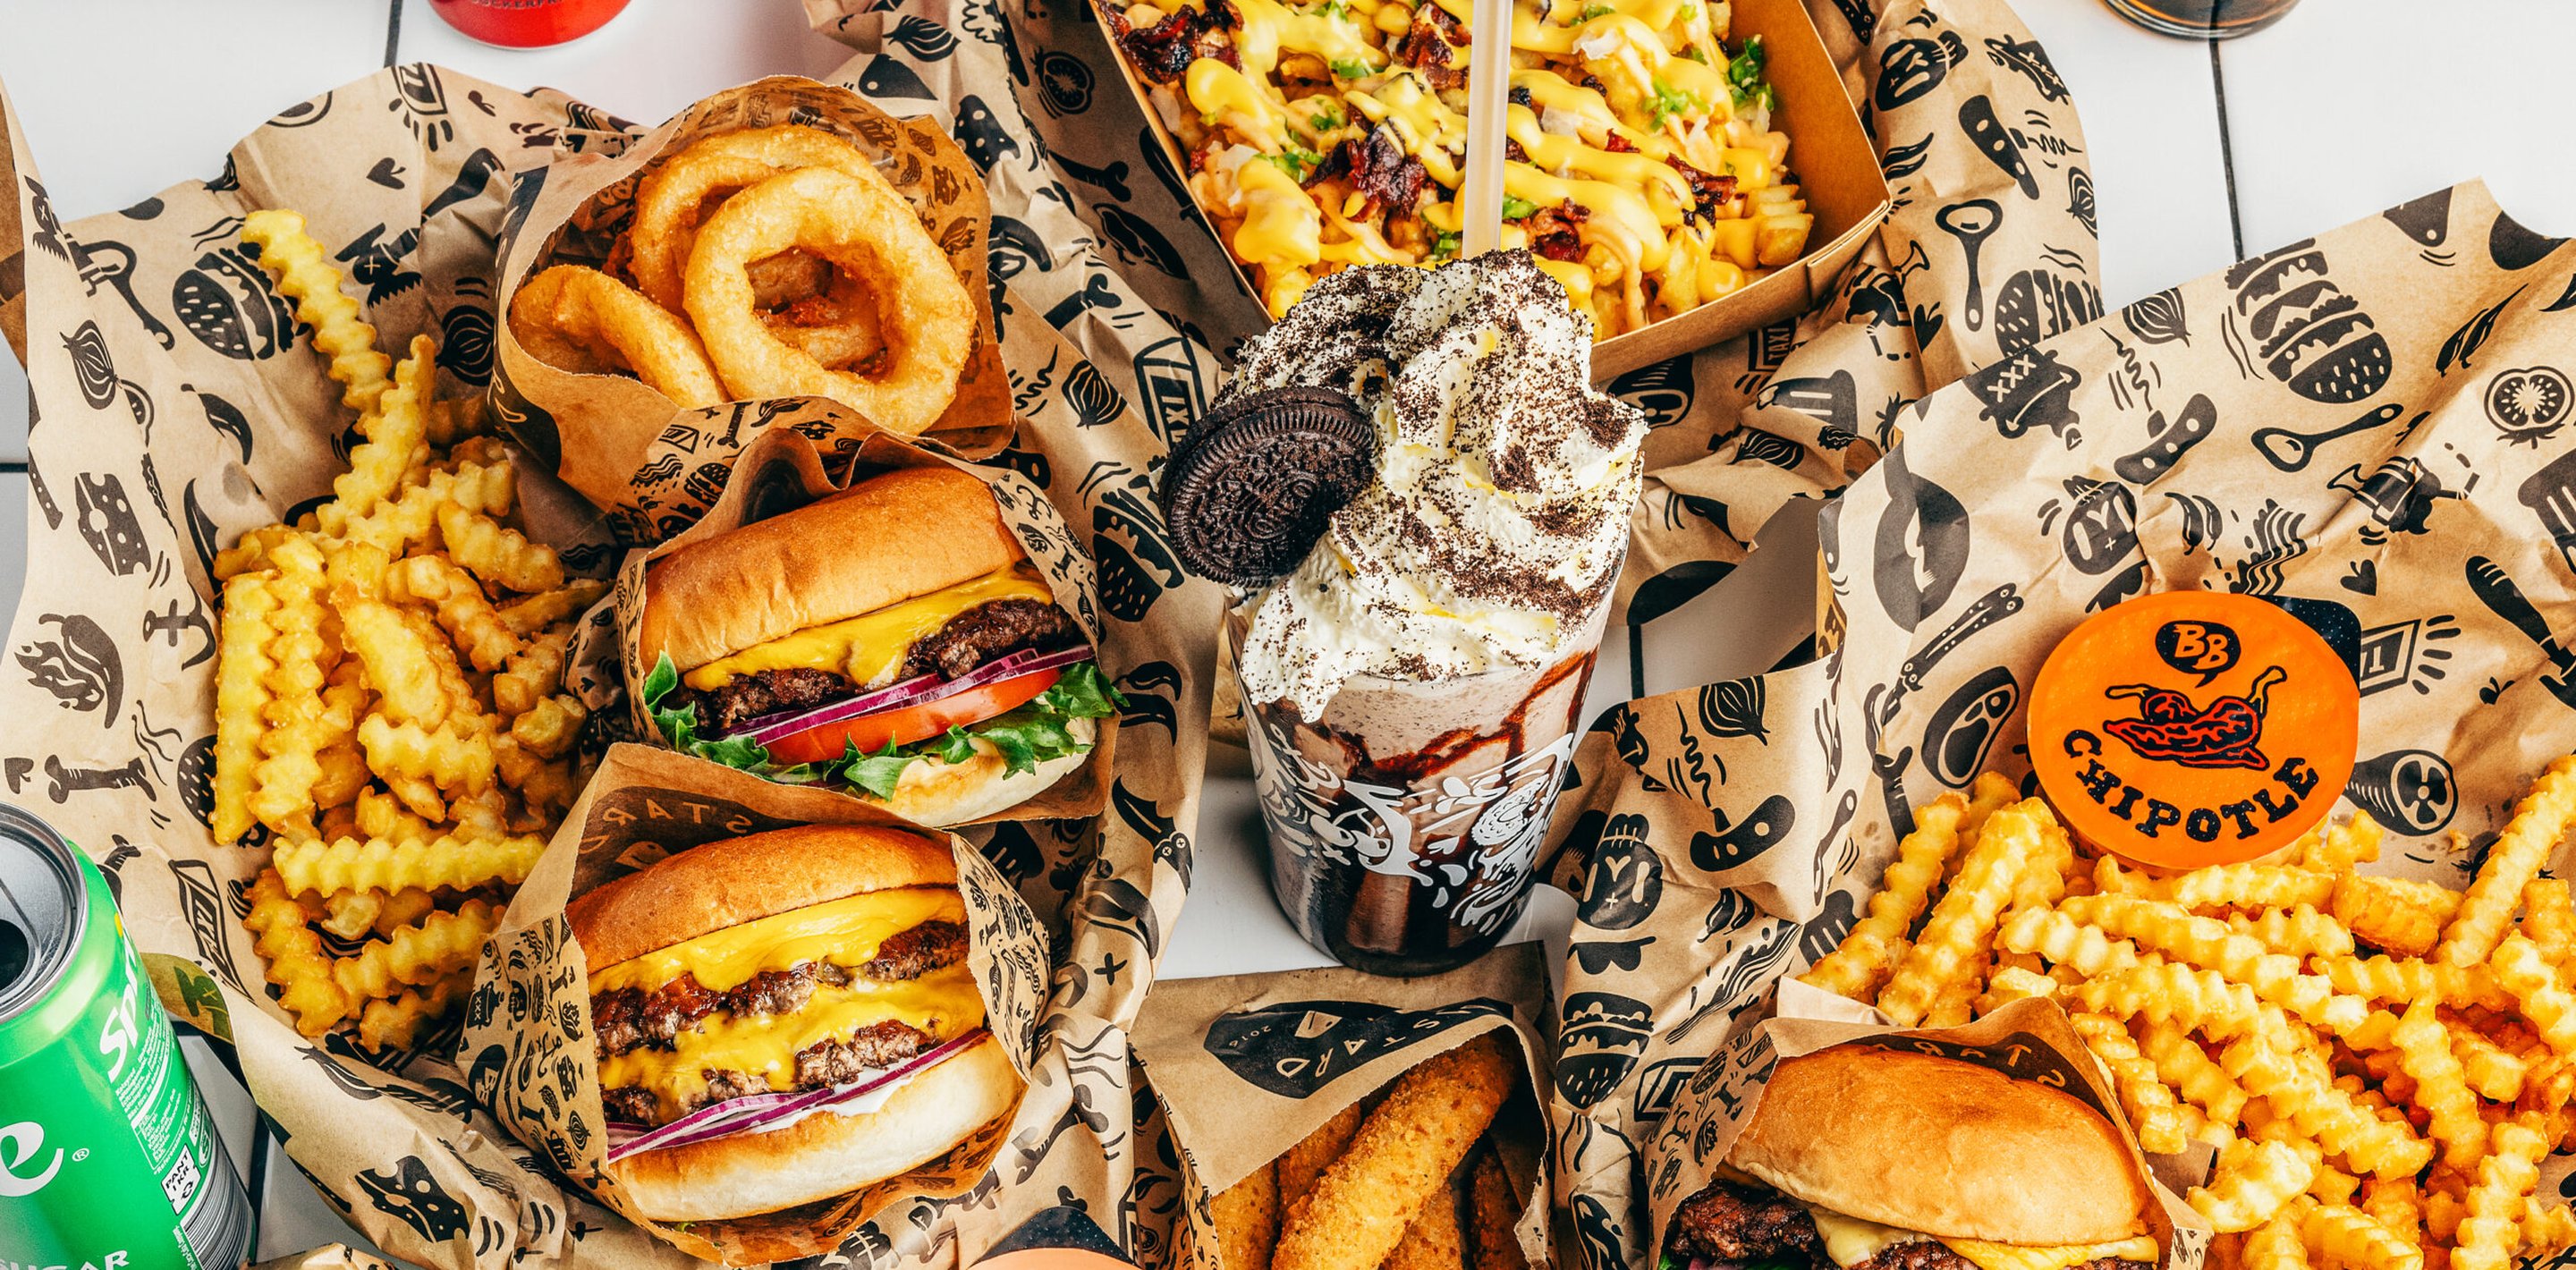 Bastard Burgers avaa ensimmäisen ravintolansa Soumessa